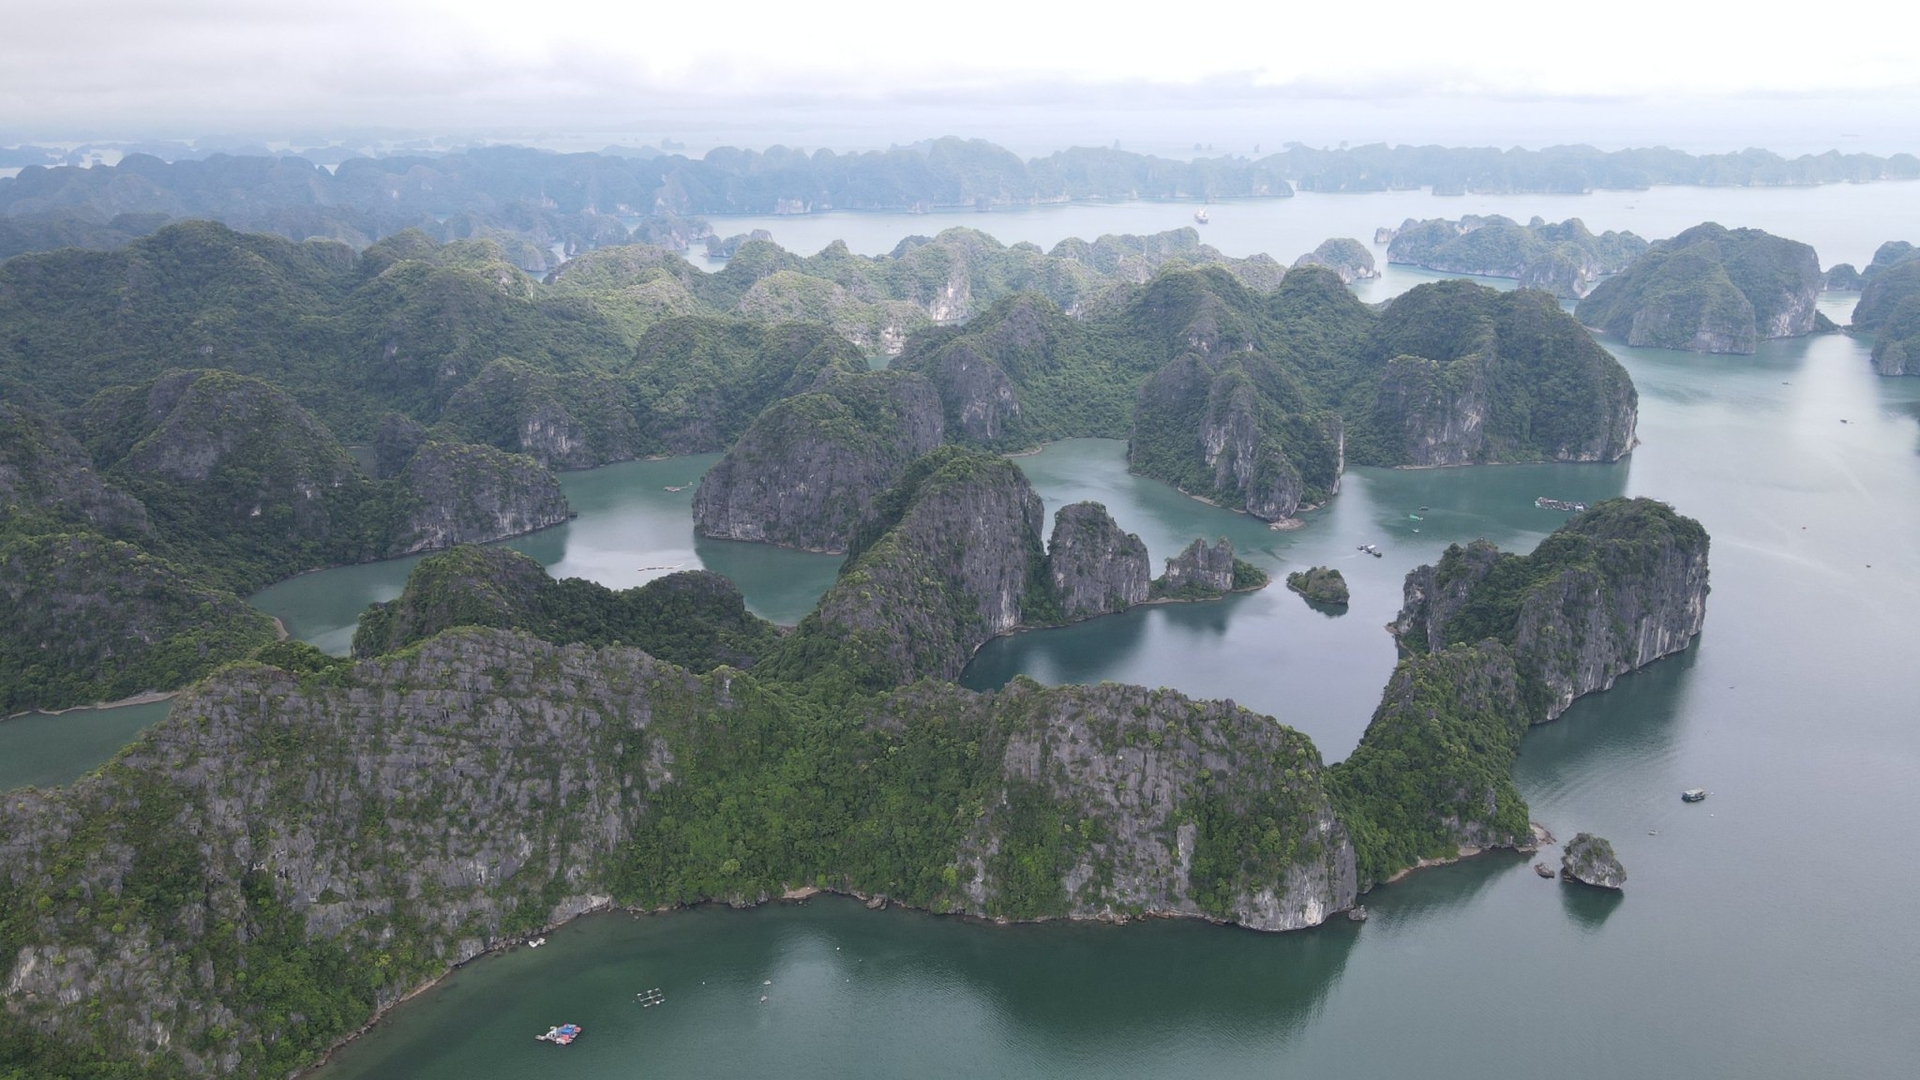 Quần thể vịnh Hạ Long - quần đảo Cát Bà được công nhận là di sản thiên nhiên thế giới. Ảnh: Nhật Quang.